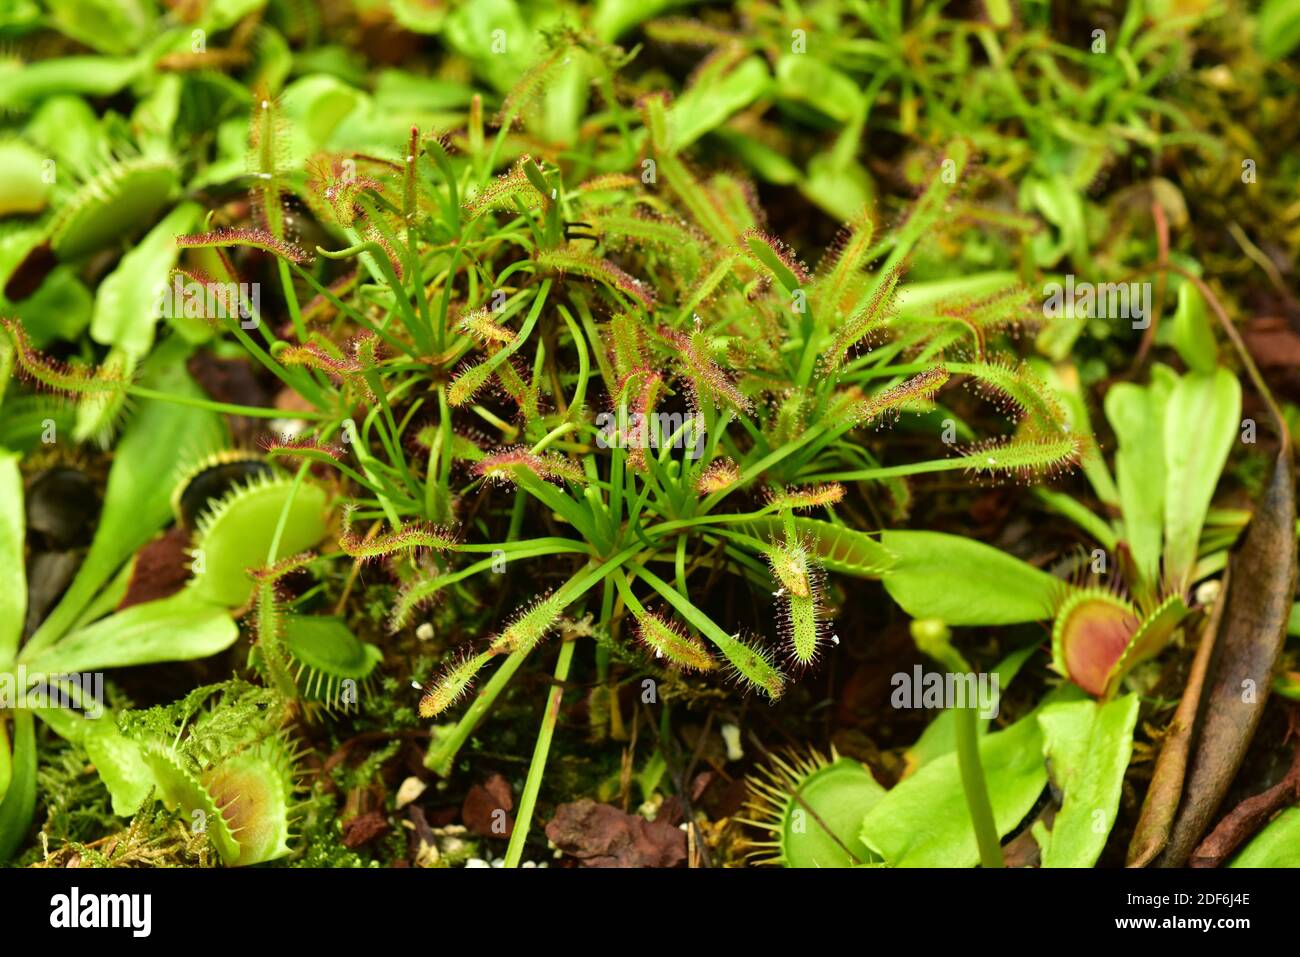 Kapsundaw (Drosera capensis) fleischfressende Pflanze aus dem Kap, Südafrika, und Venusfliegenfalle (Dionaea muscipula) eine weitere fleischfressende Pflanze Stockfoto